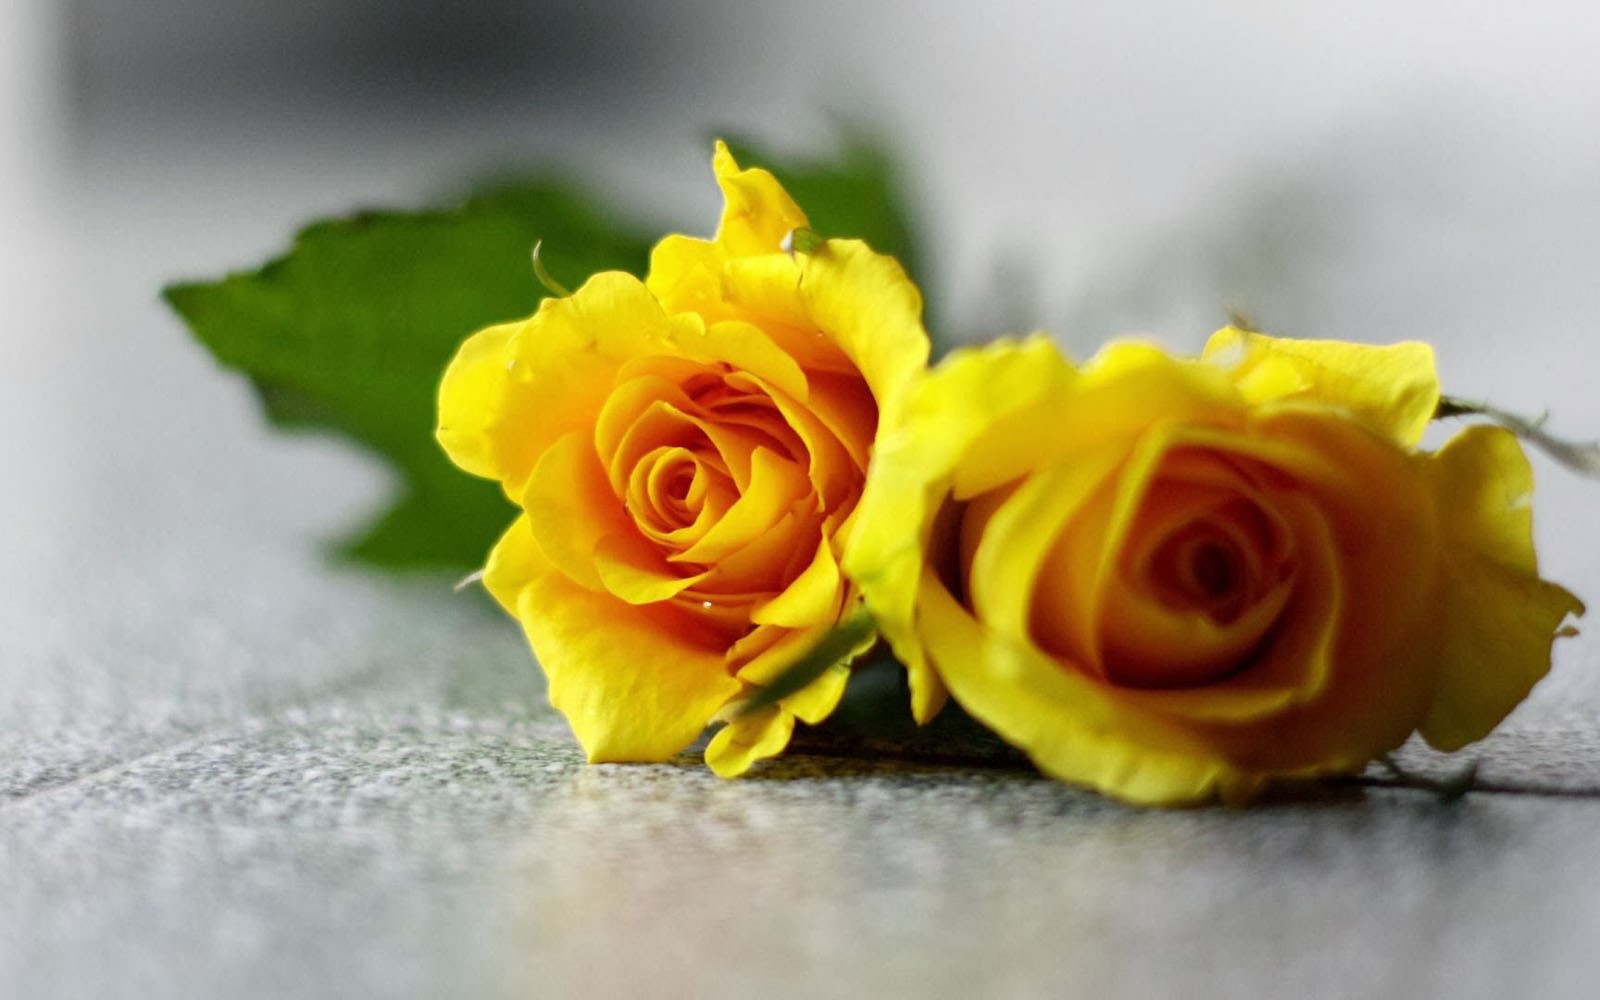 schöne bilder von rosen als tapete,blume,gelb,rose,gartenrosen,rosenfamilie